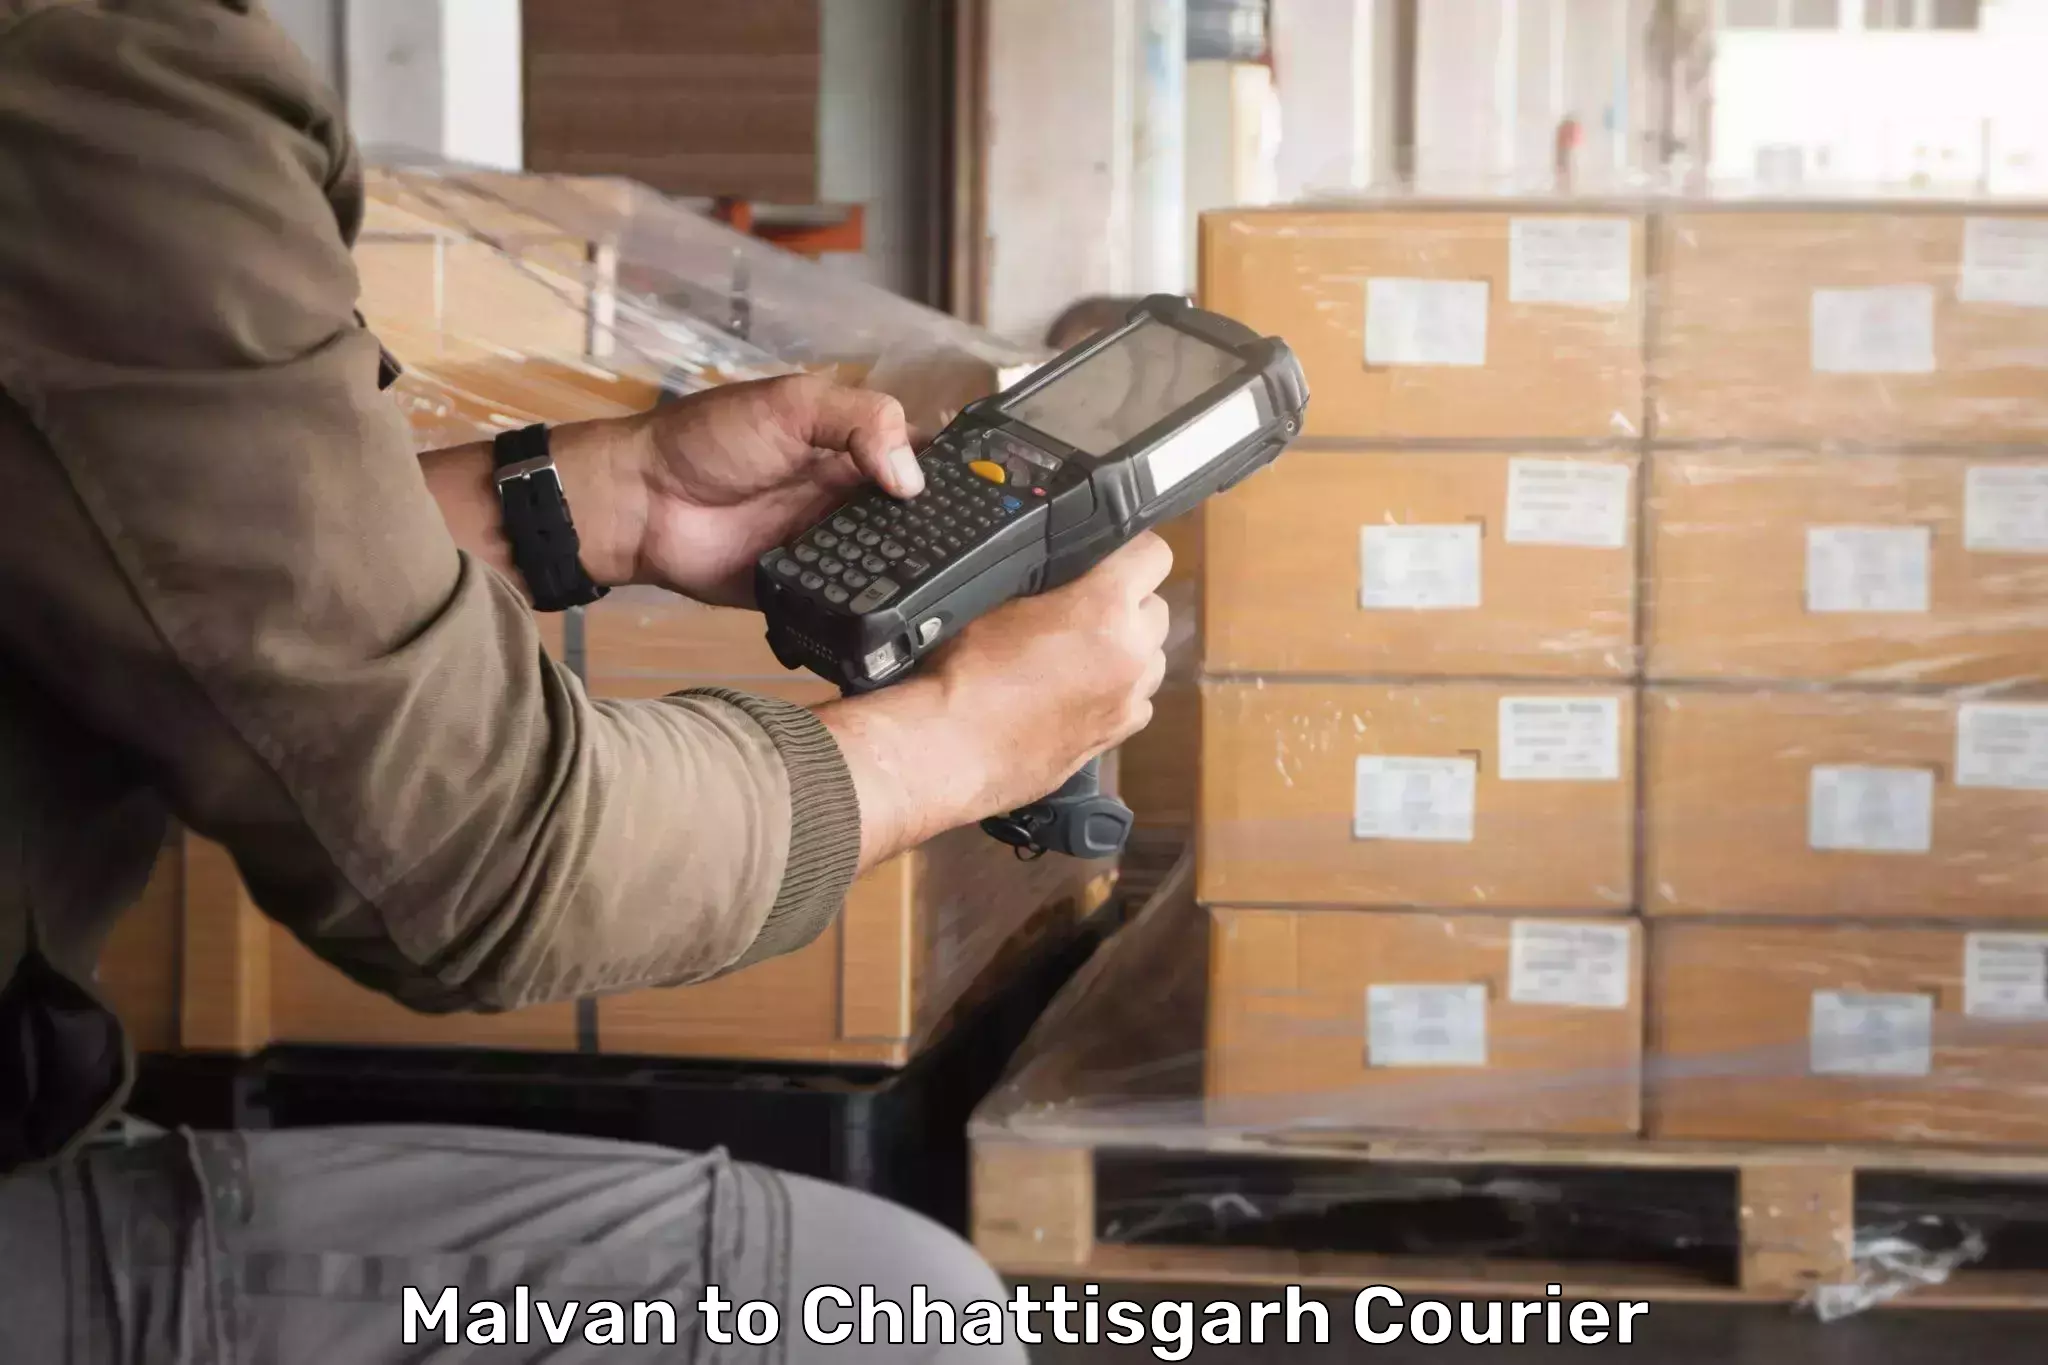 Efficient parcel service Malvan to Chhattisgarh